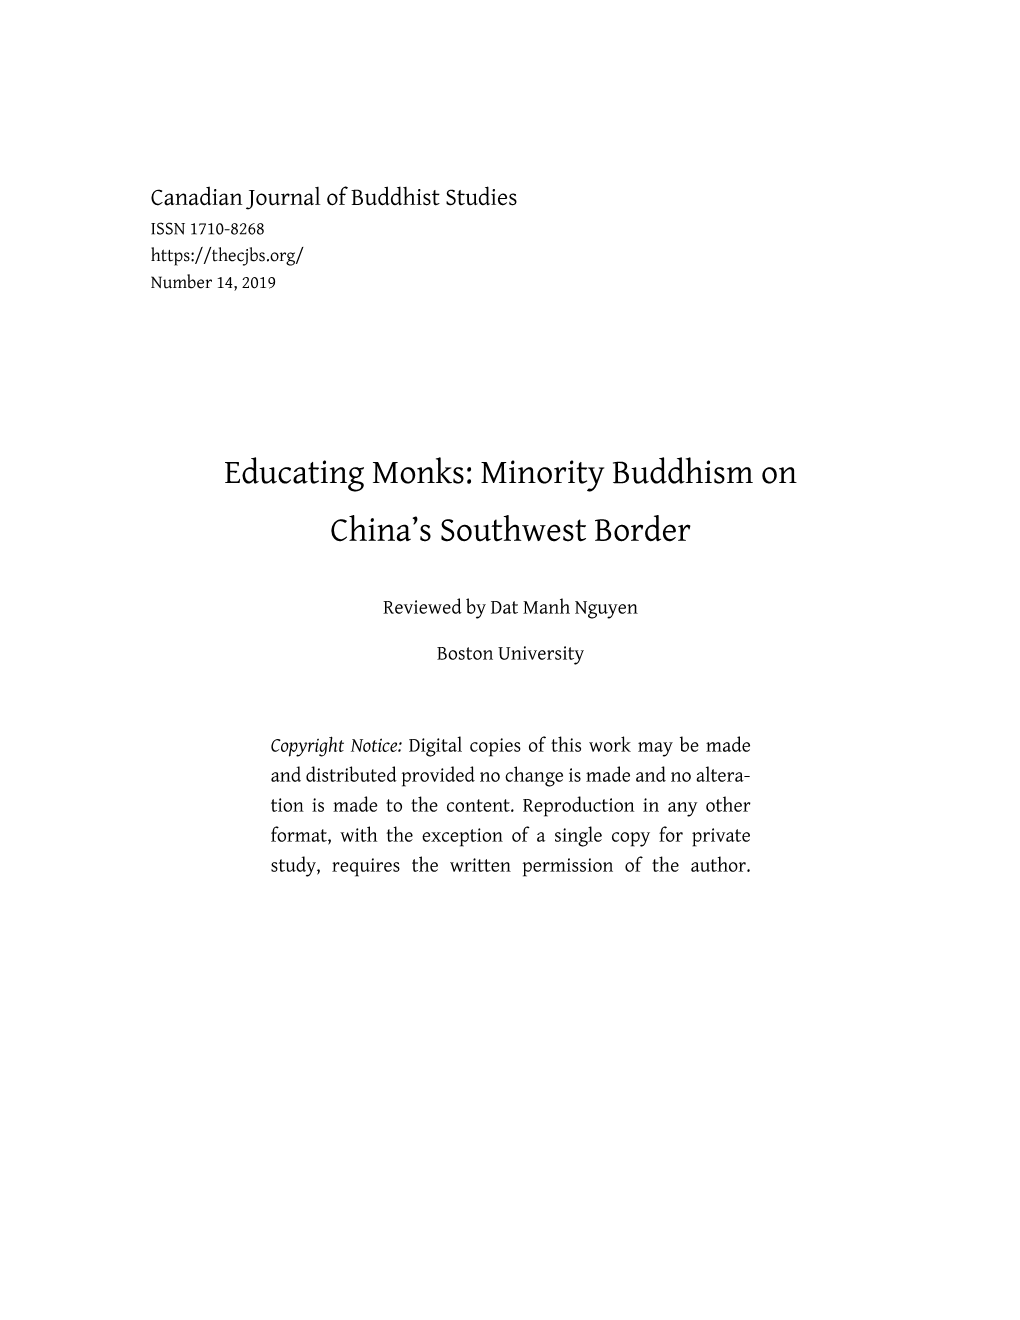 Educating Monks: Minority Buddhism on China’S Southwest Border